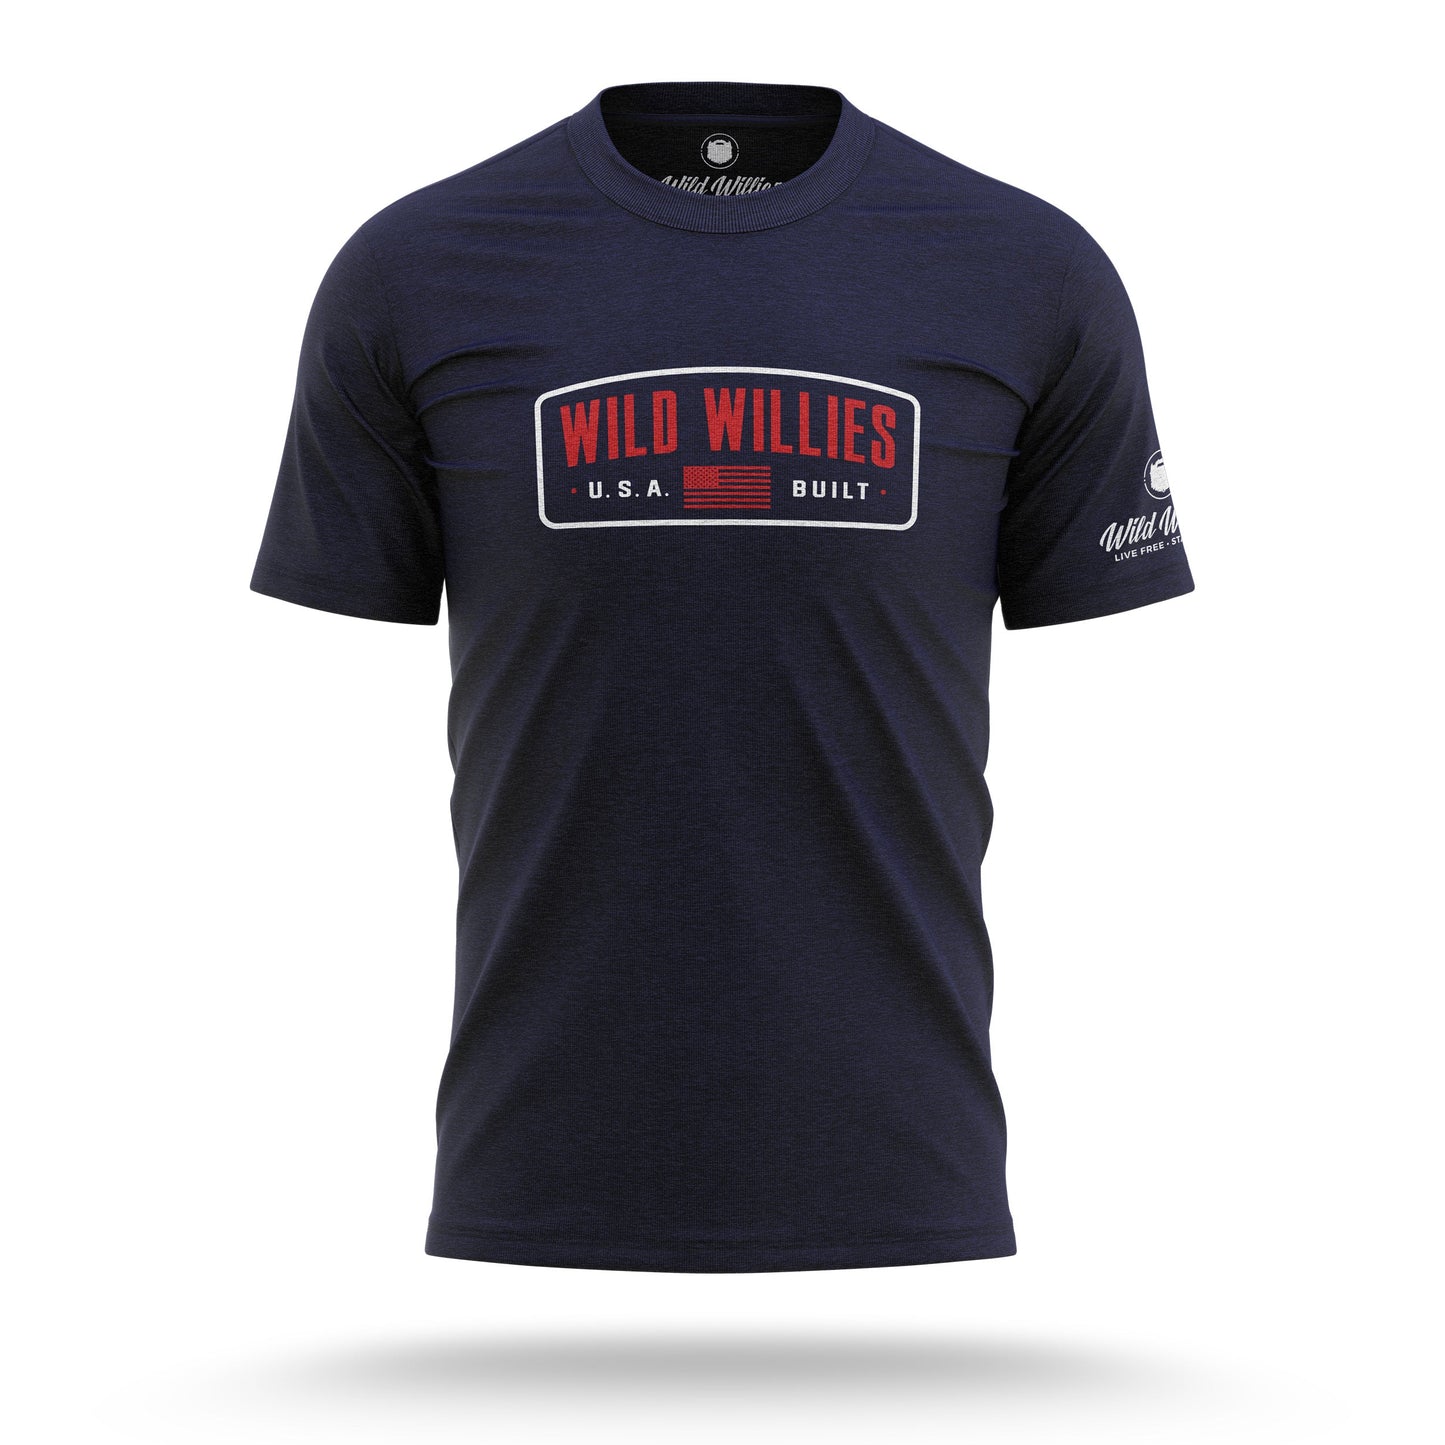 USA BUILT - T-Shirt T-Shirt Wild-Willies S NAVY 